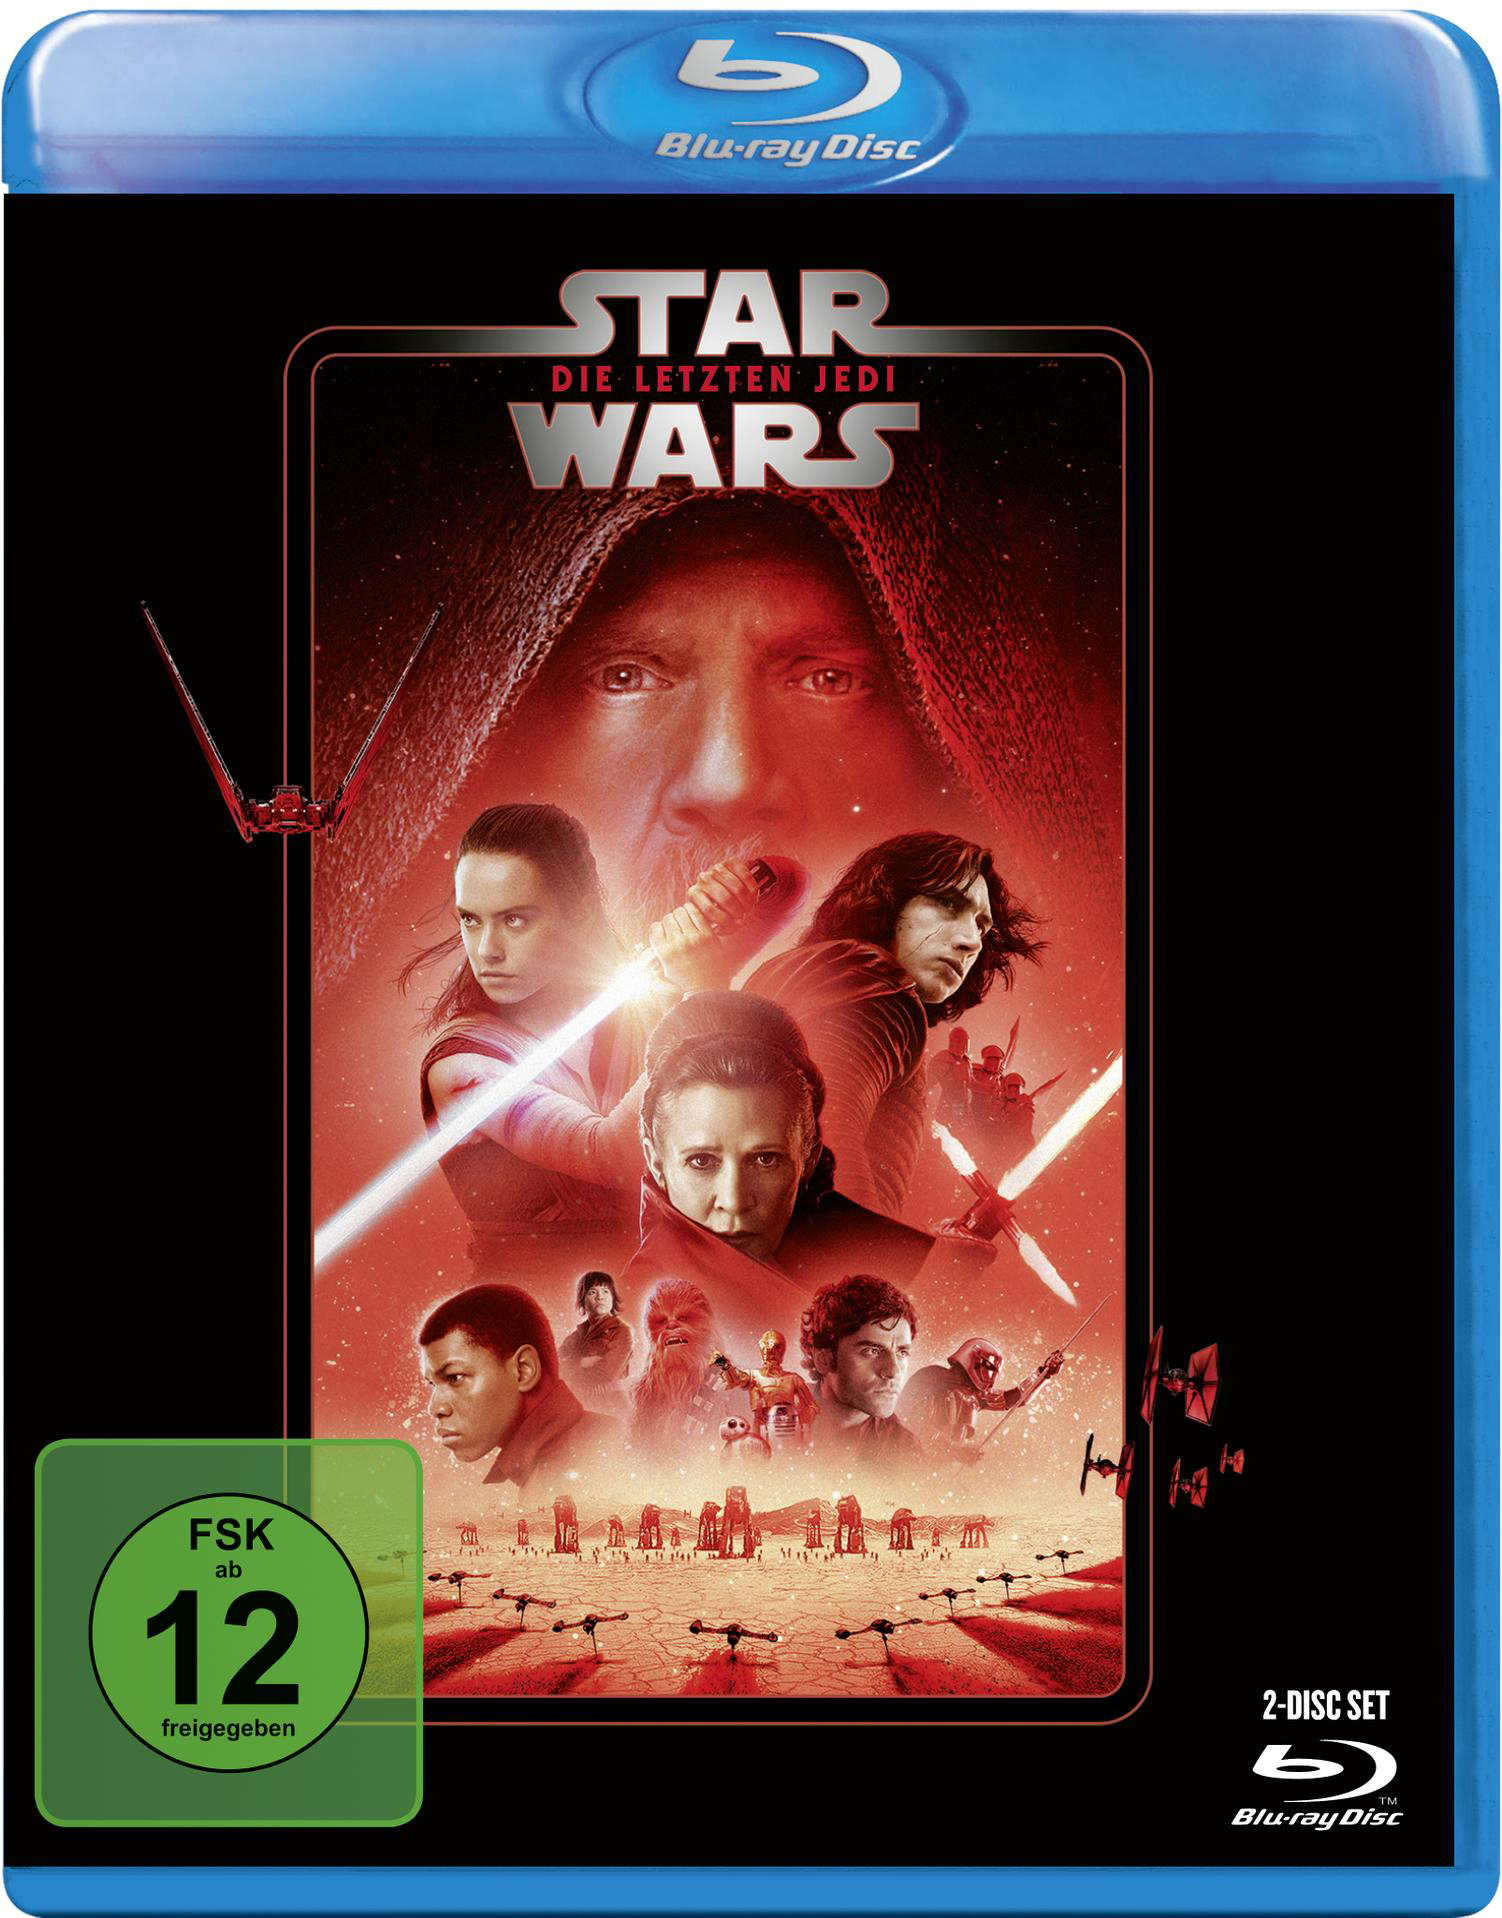 Blu-ray letzten Wars: Star Die Jedi